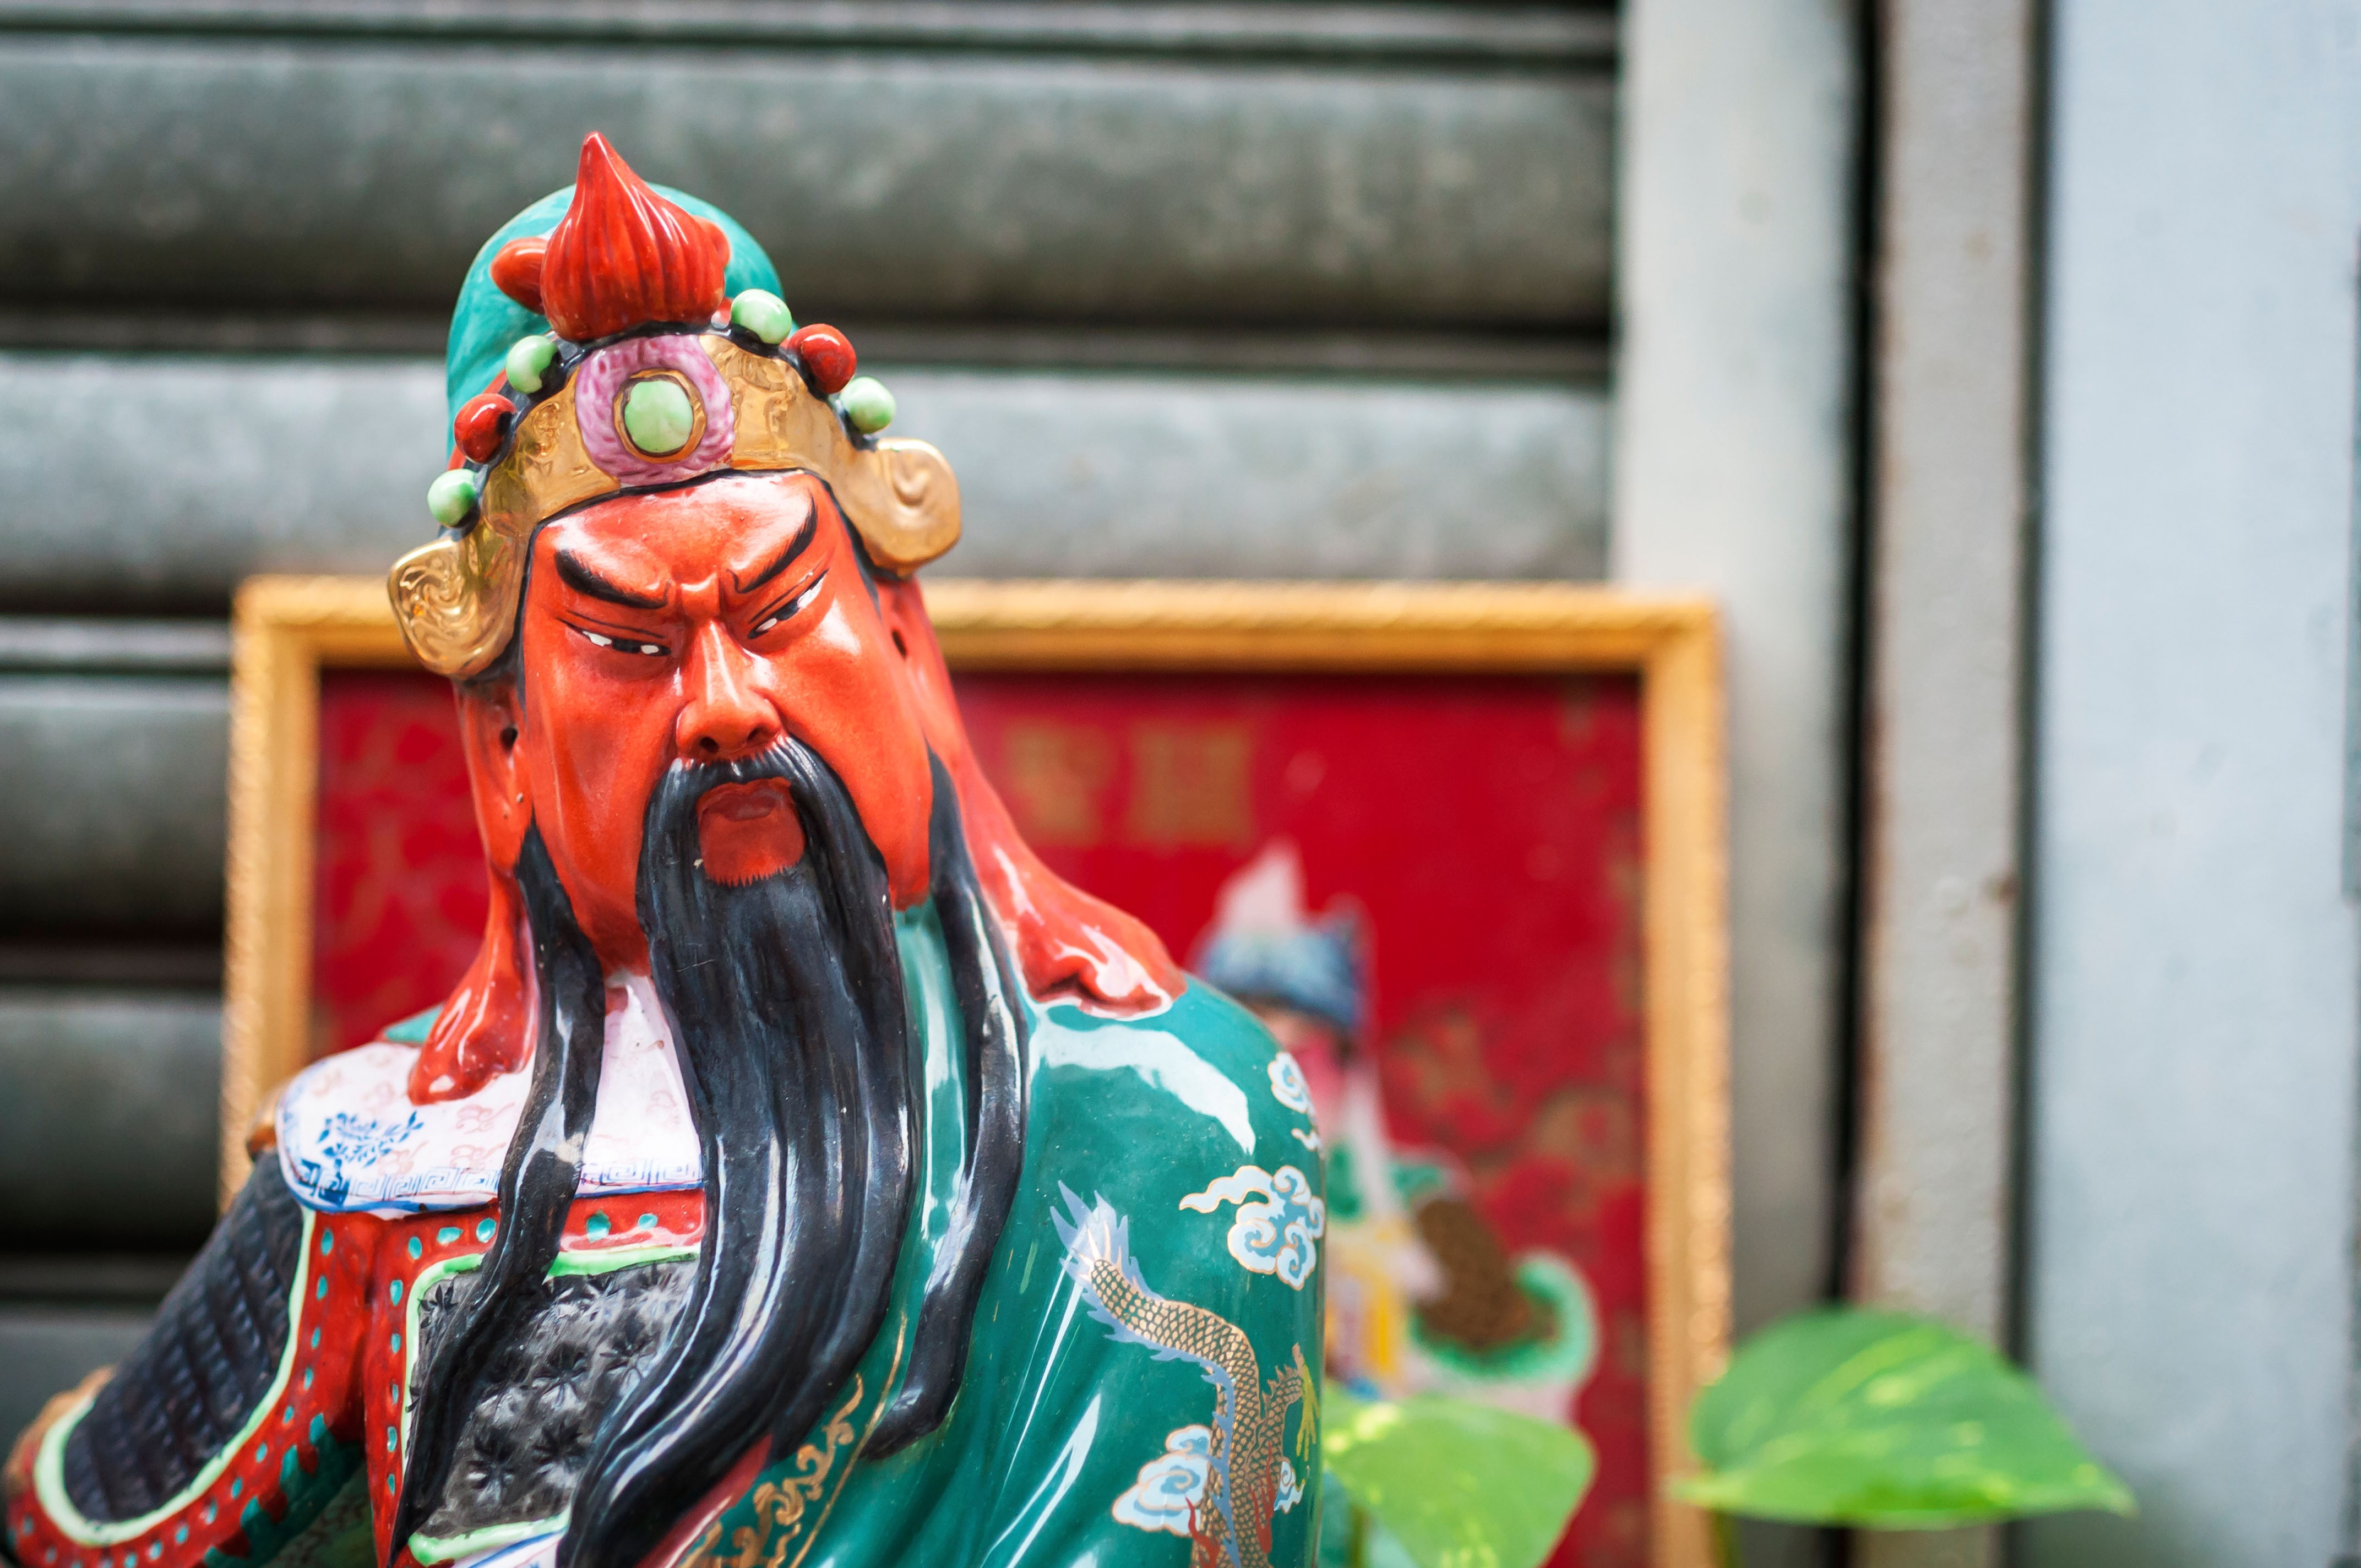 chinese god of war guan yu